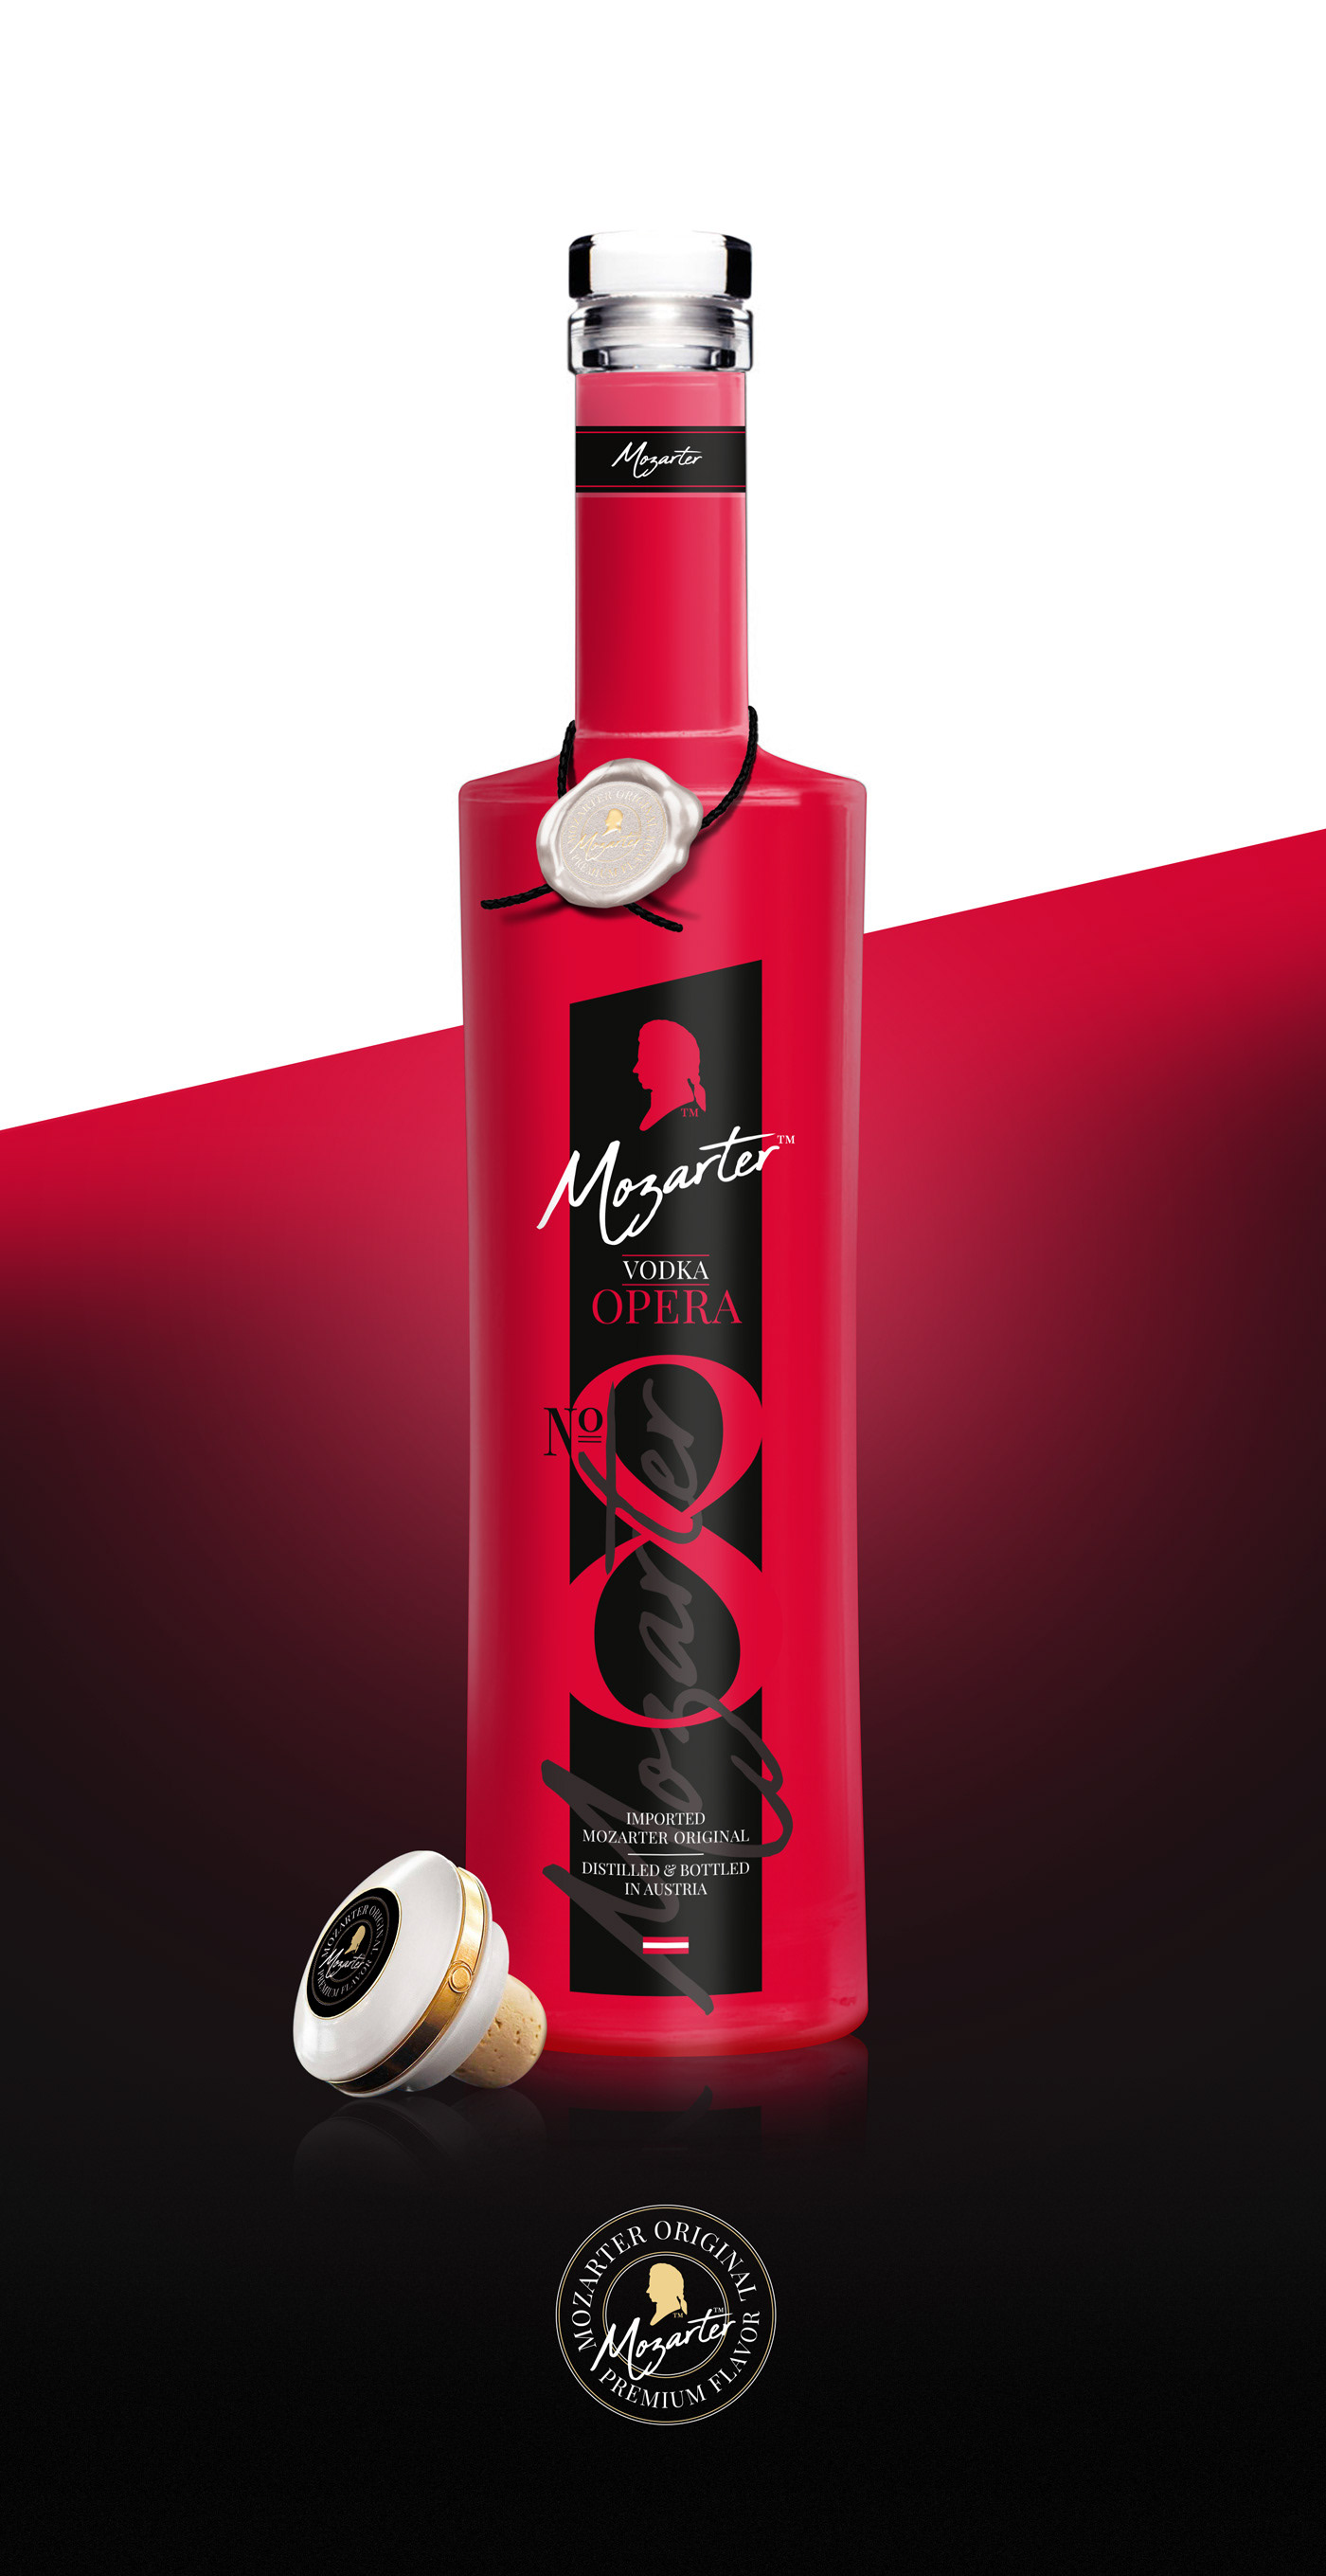 Mozarter Vodka opera red bottle Corporate Identity austria munich Classic #HP  